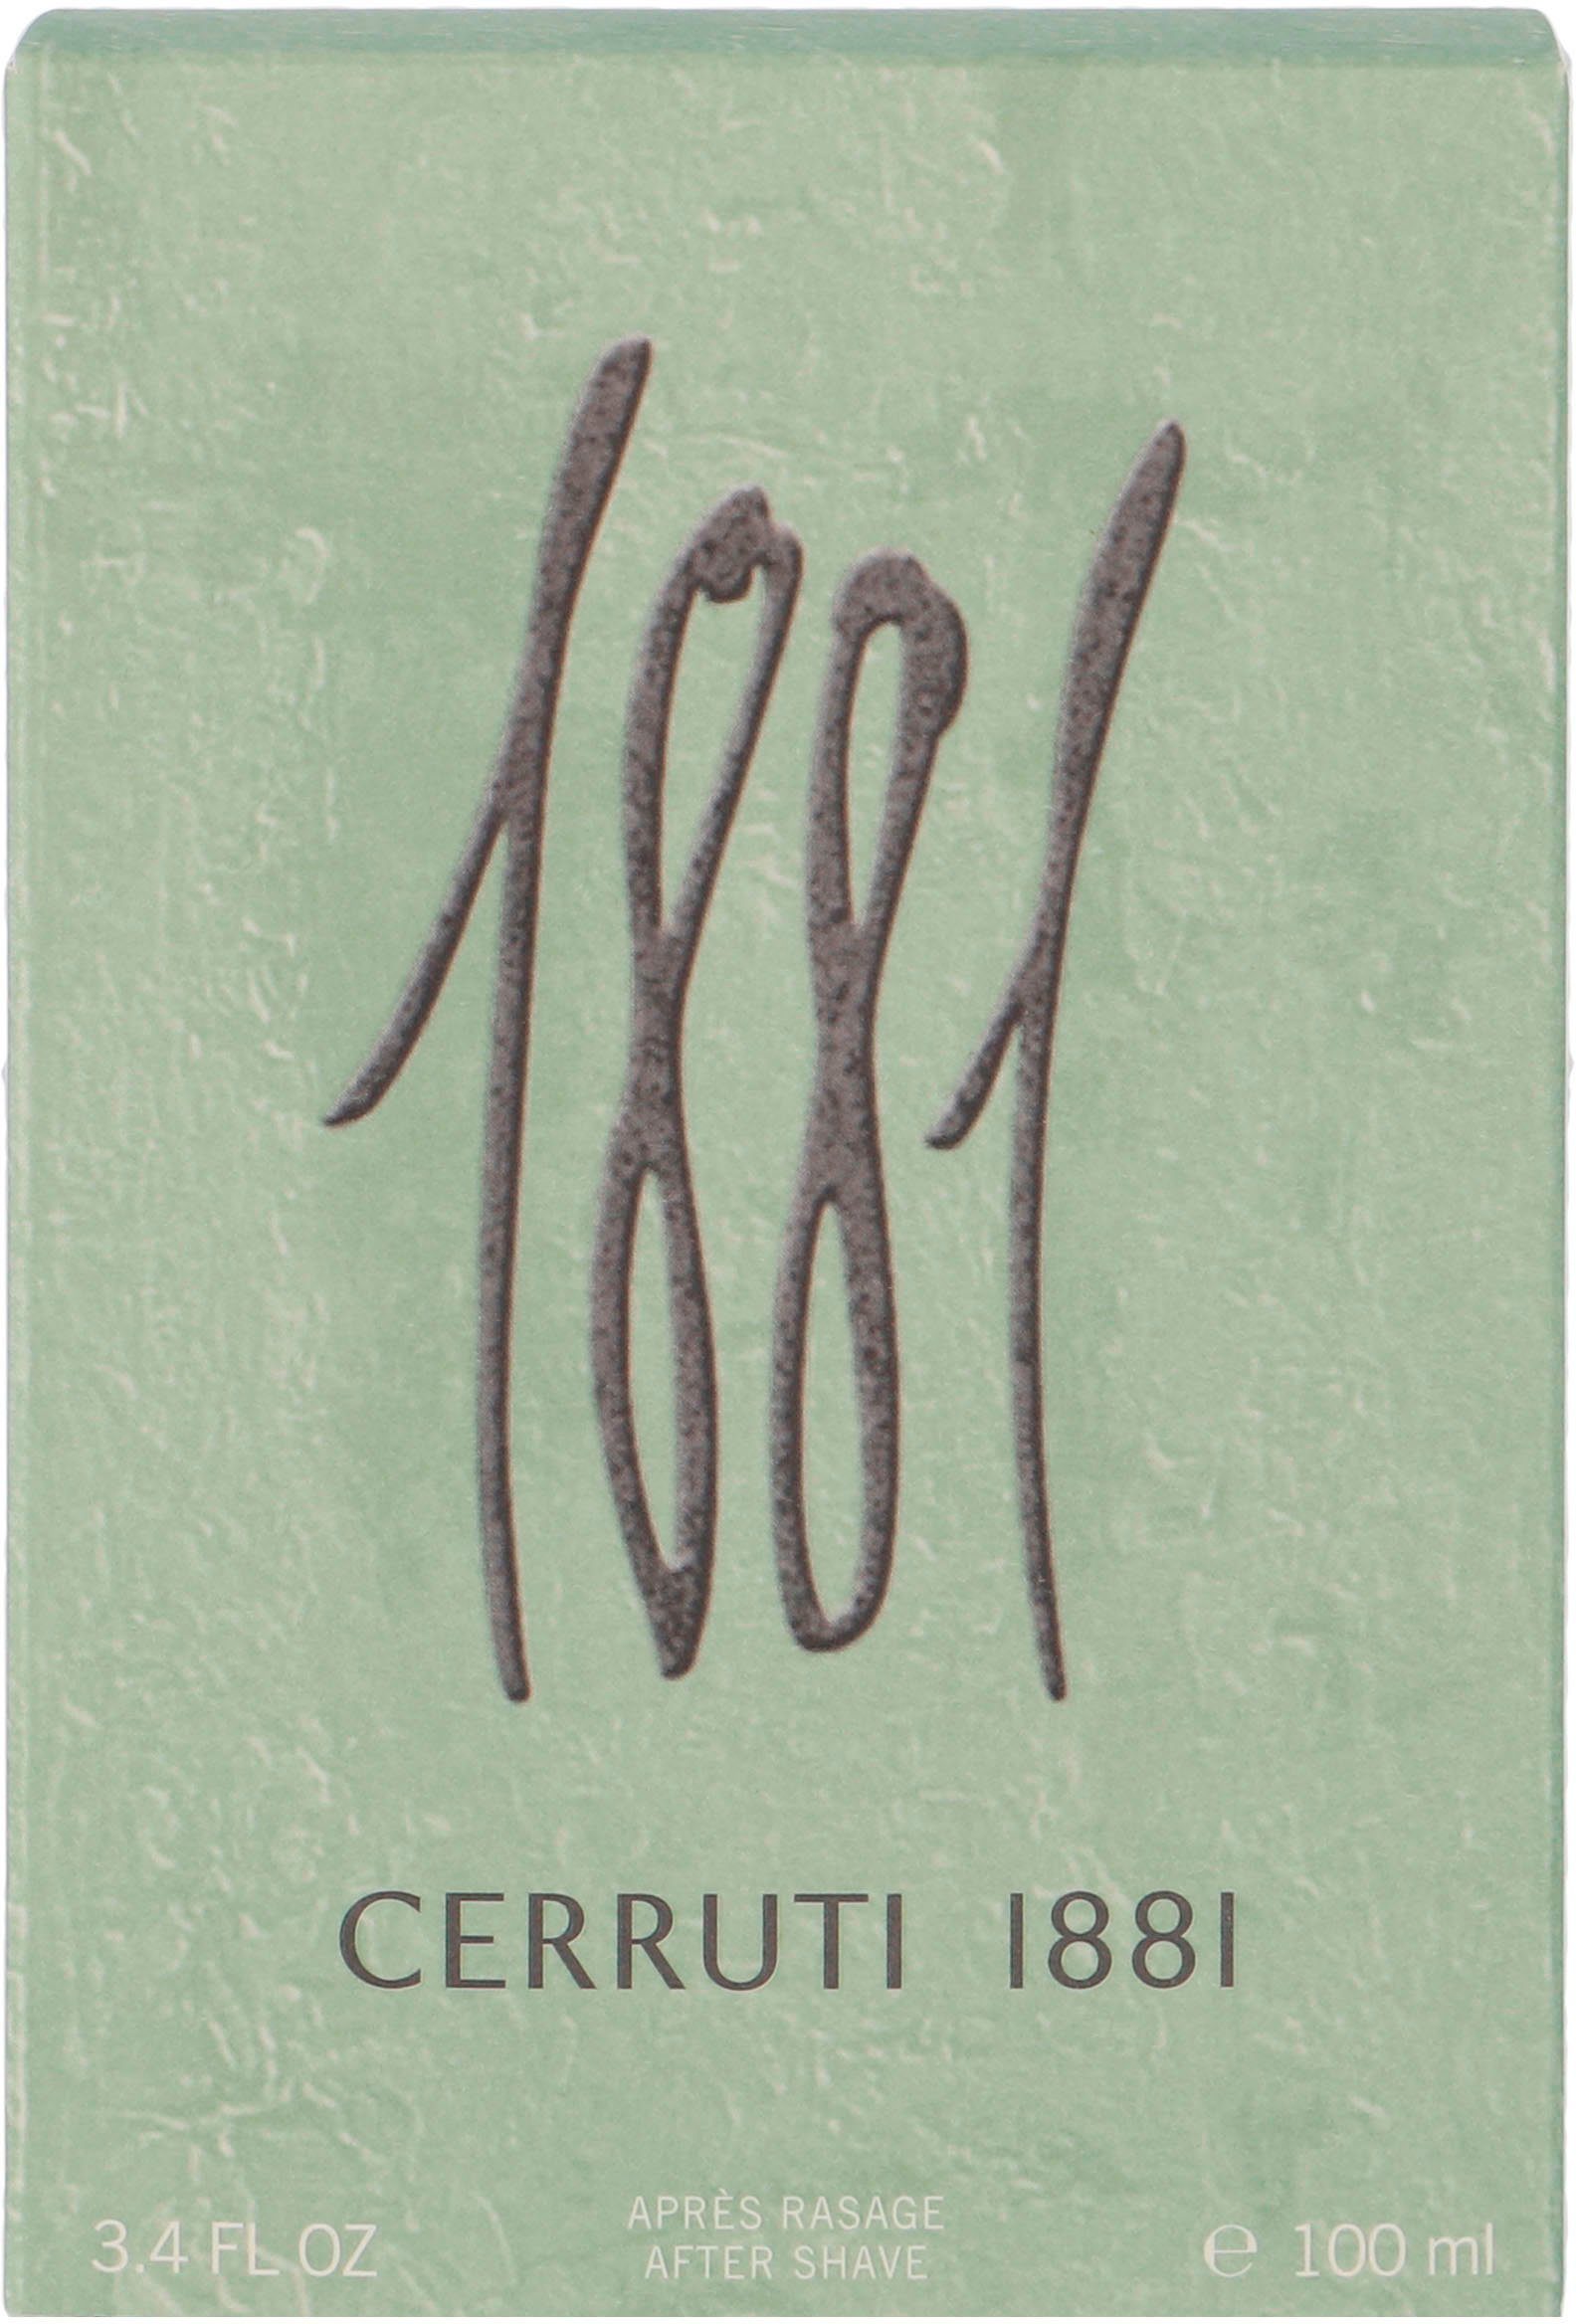 CERRUTI 1881 After-Shave